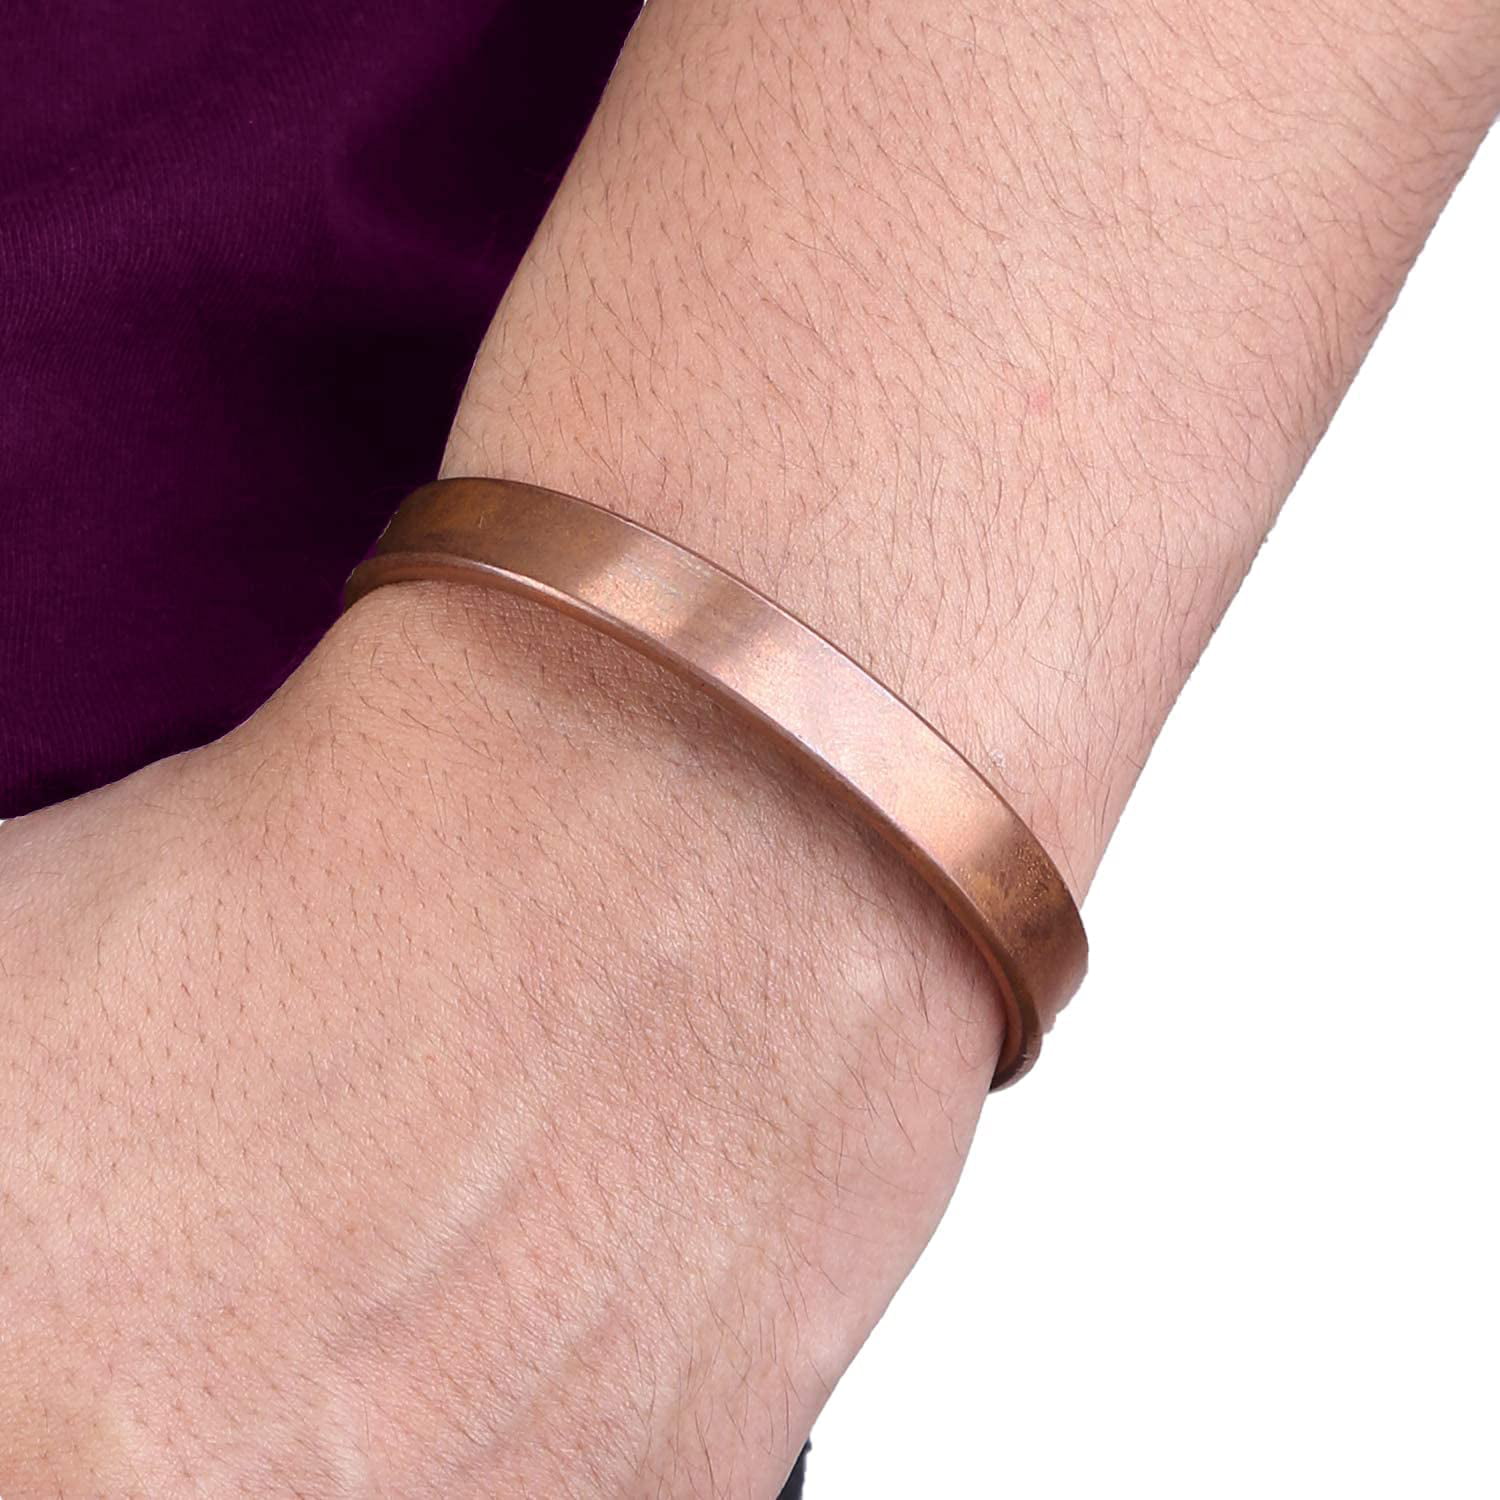 WC 100% Copper Bracelet for Women and Men kada Copper Cuff Bracelet